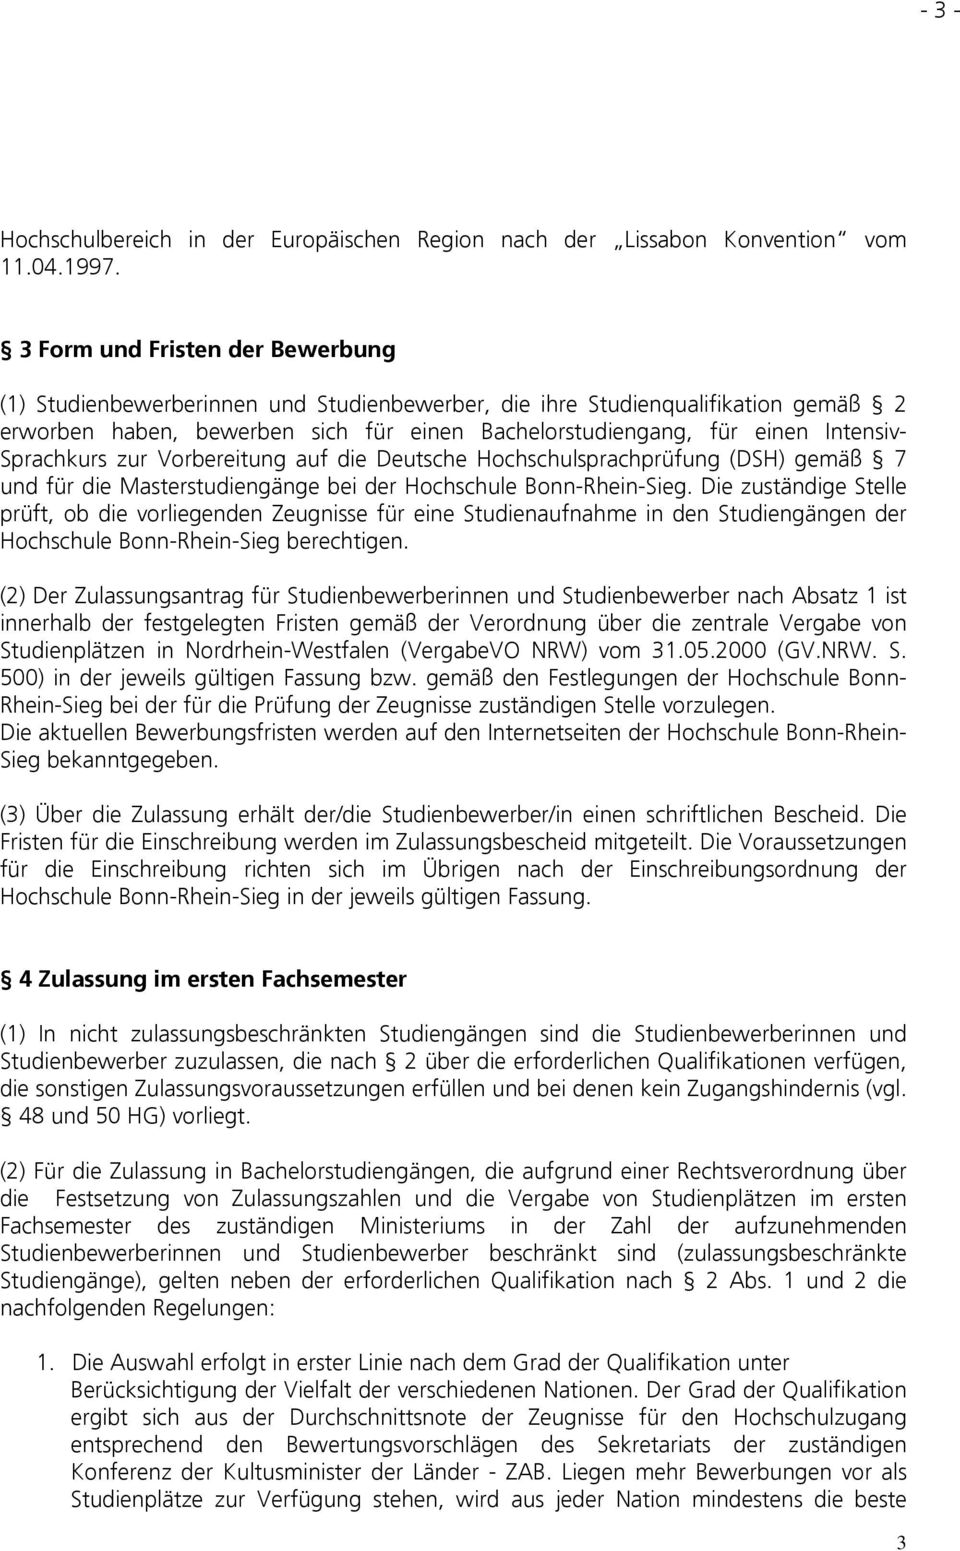 Sprachkurs zur Vorbereitung auf die Deutsche Hochschulsprachprüfung (DSH) gemäß 7 und für die Masterstudiengänge bei der Hochschule Bonn-Rhein-Sieg.